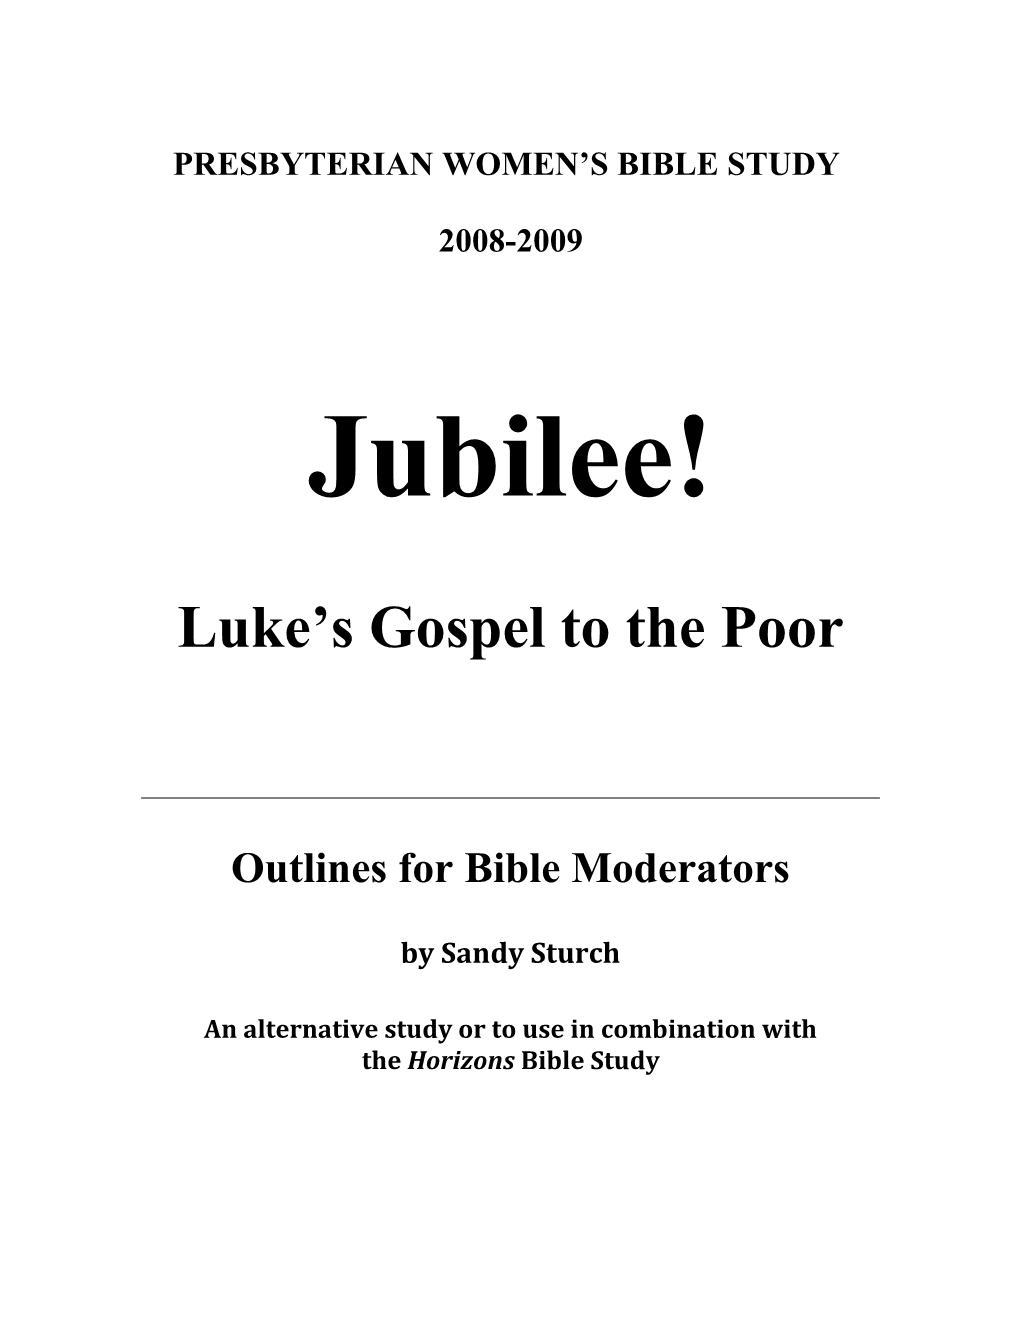 Luke S Gospel to the Poor